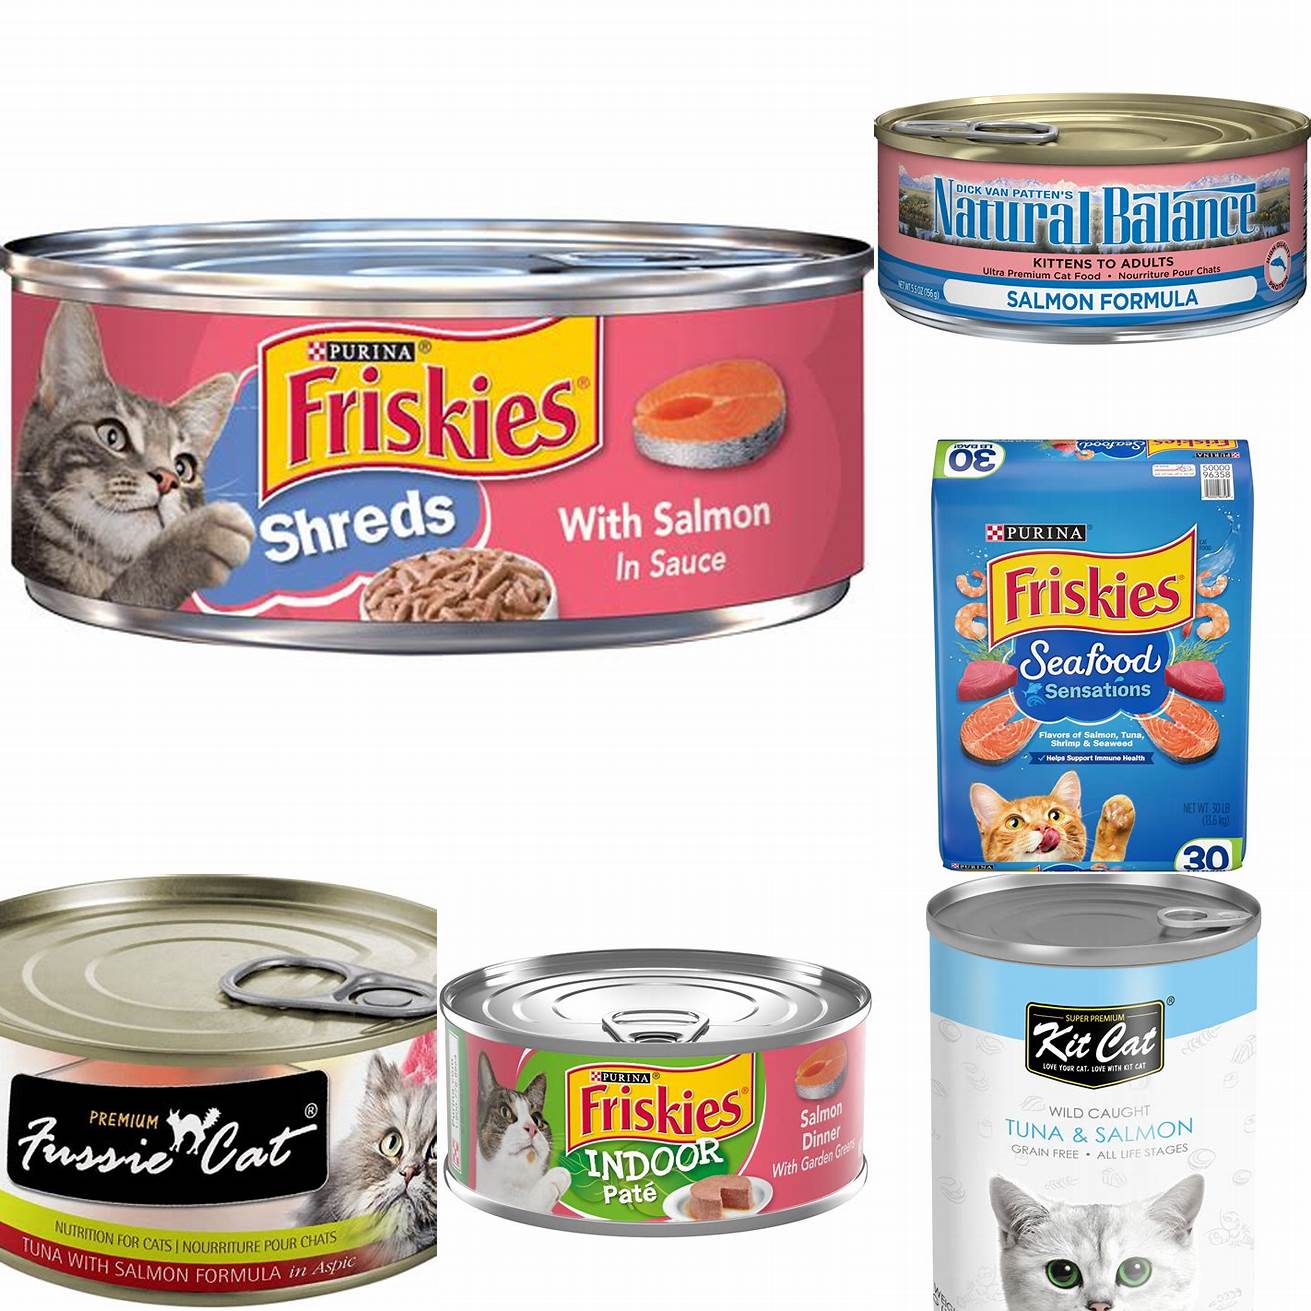 Canned tuna or salmon